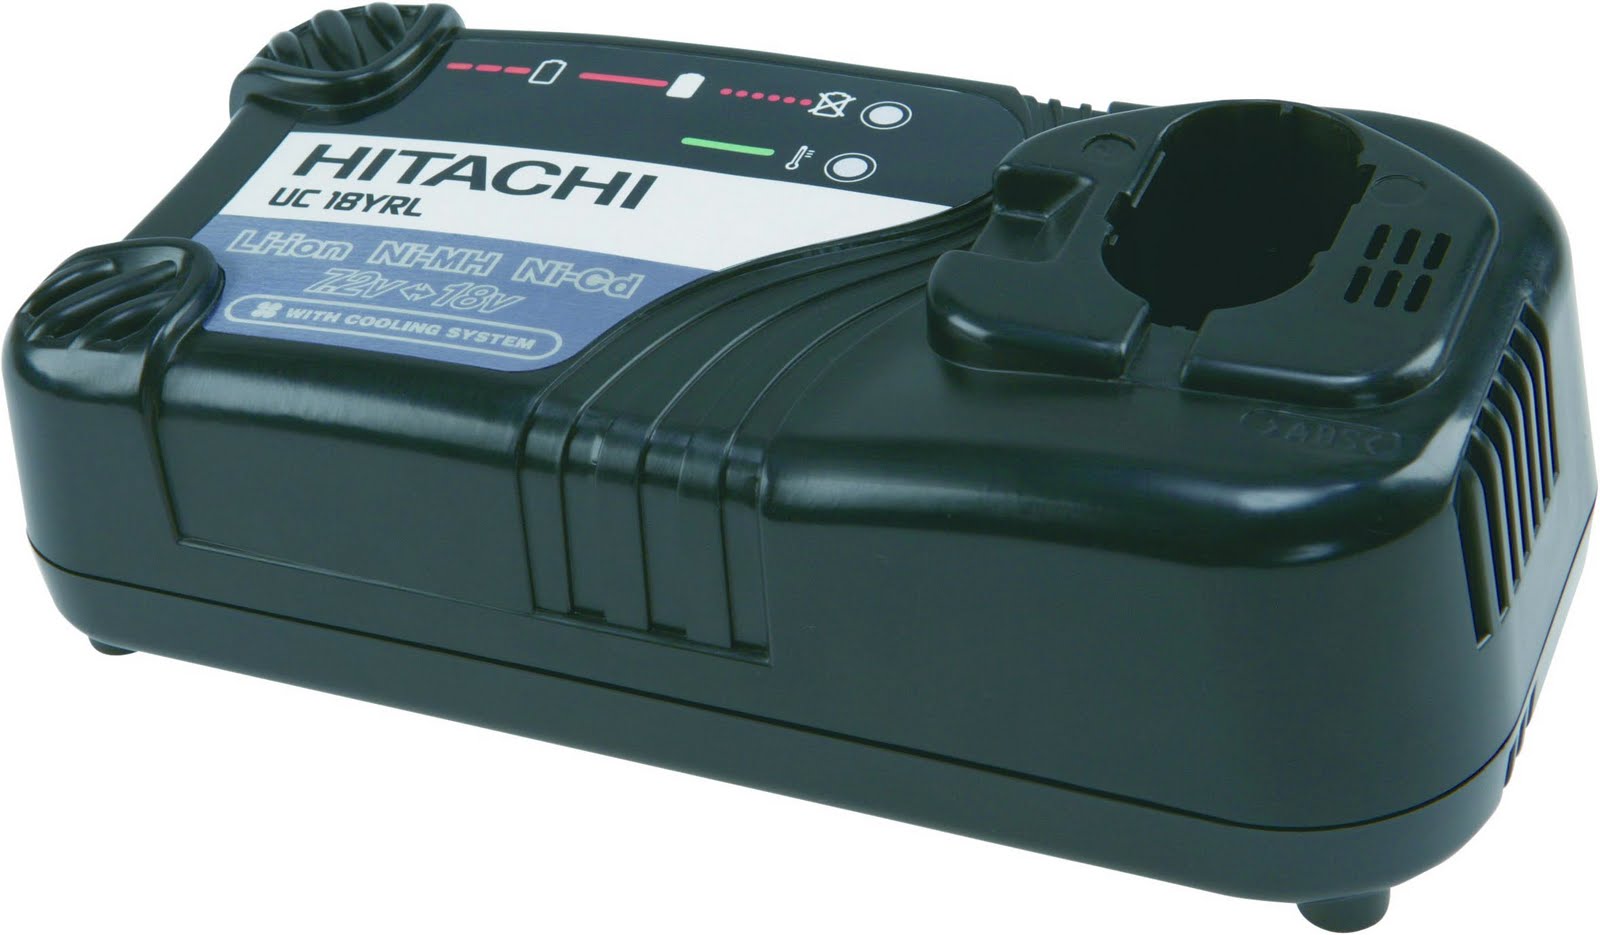 Hitachi UC18YRL